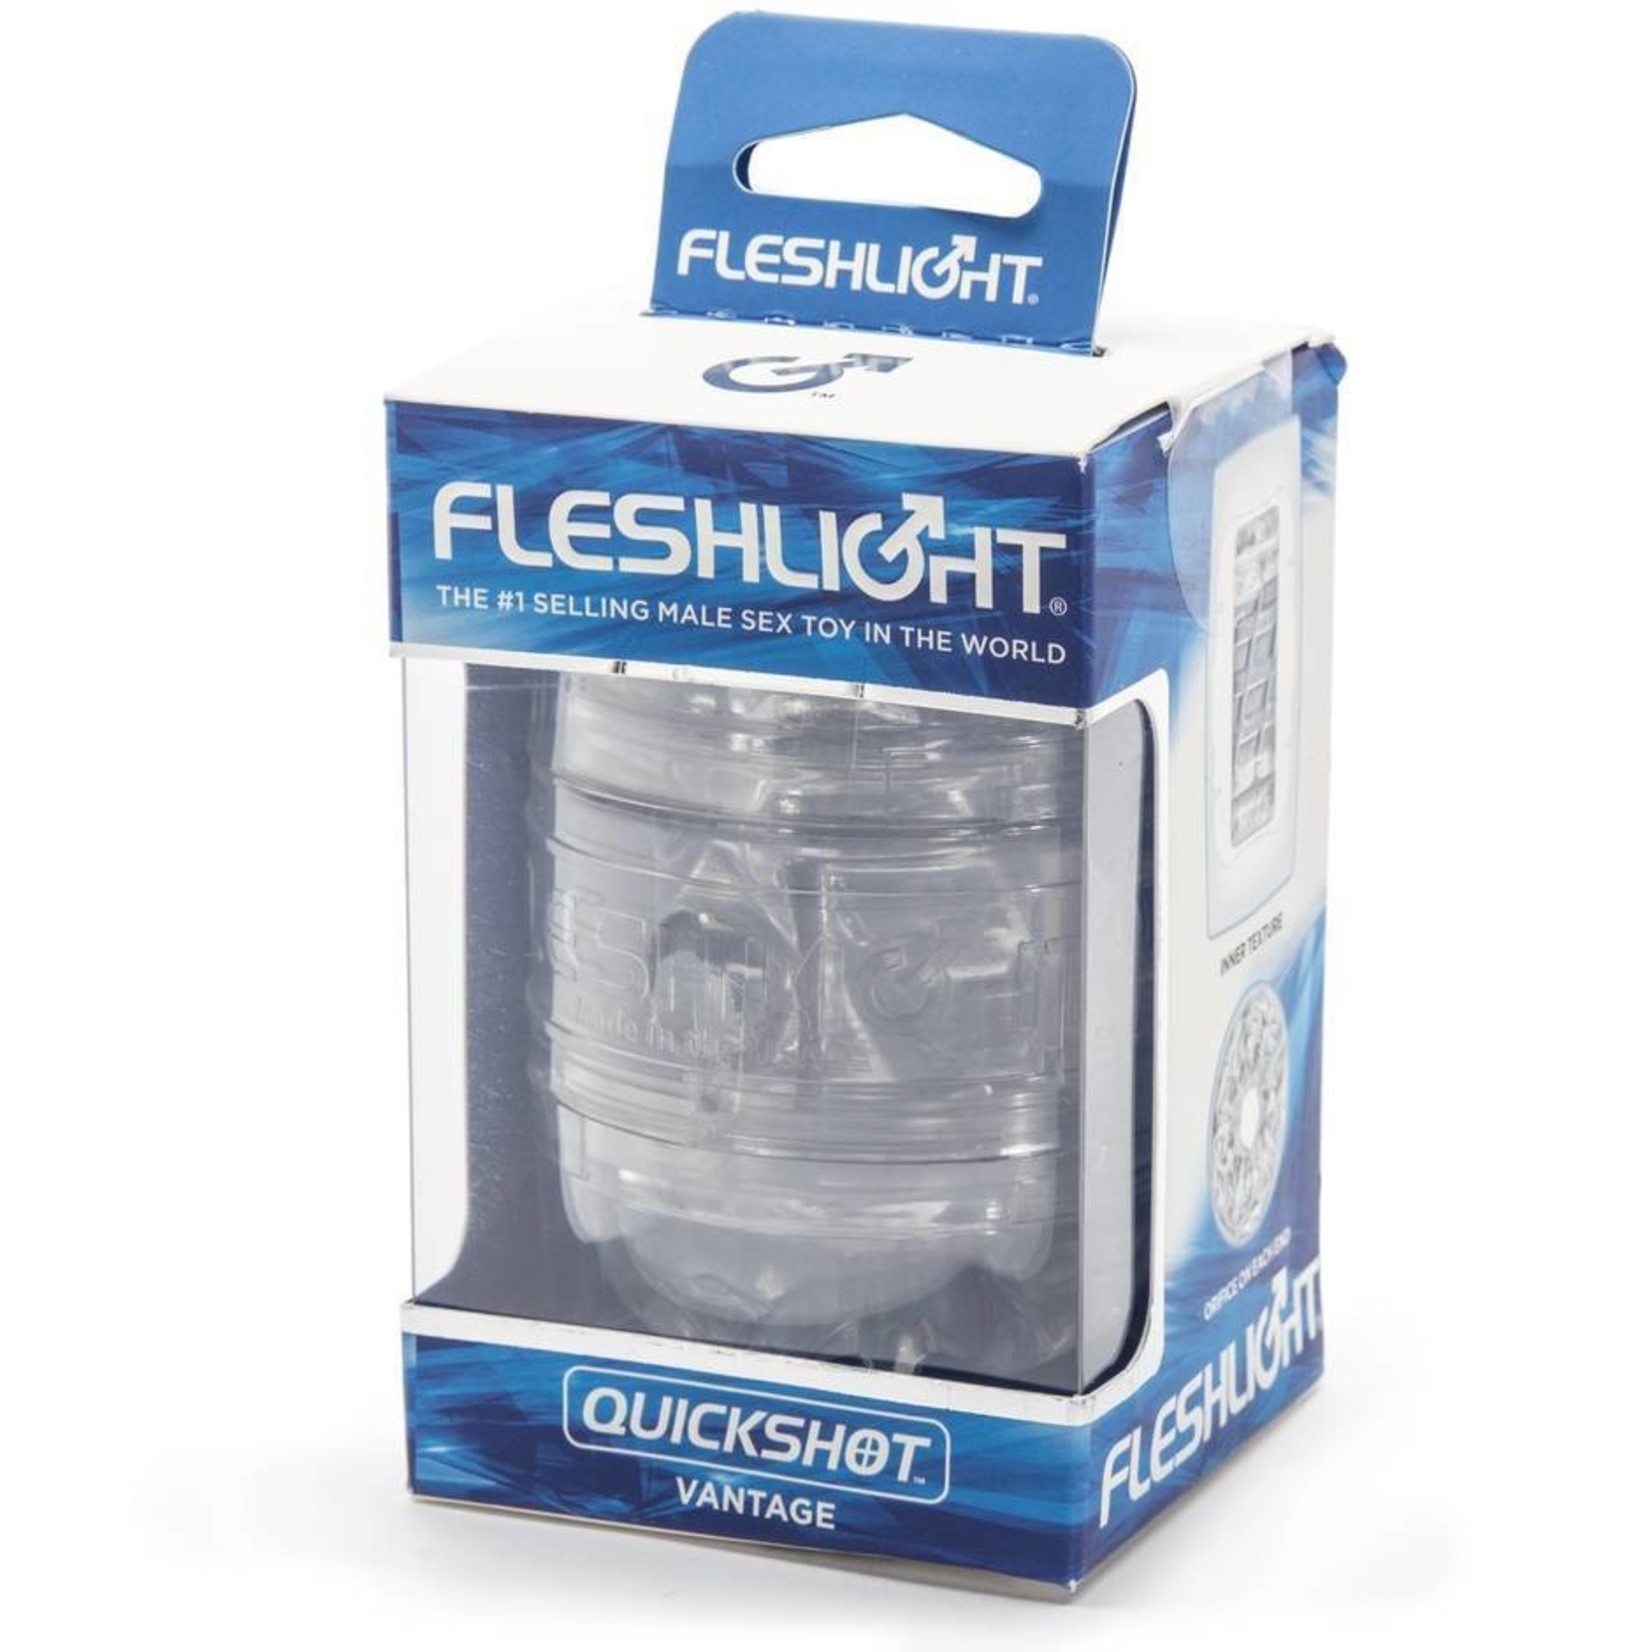 FLESH-LIGHT FLESHLIGHT - QUICKSHOT - VANTAGE